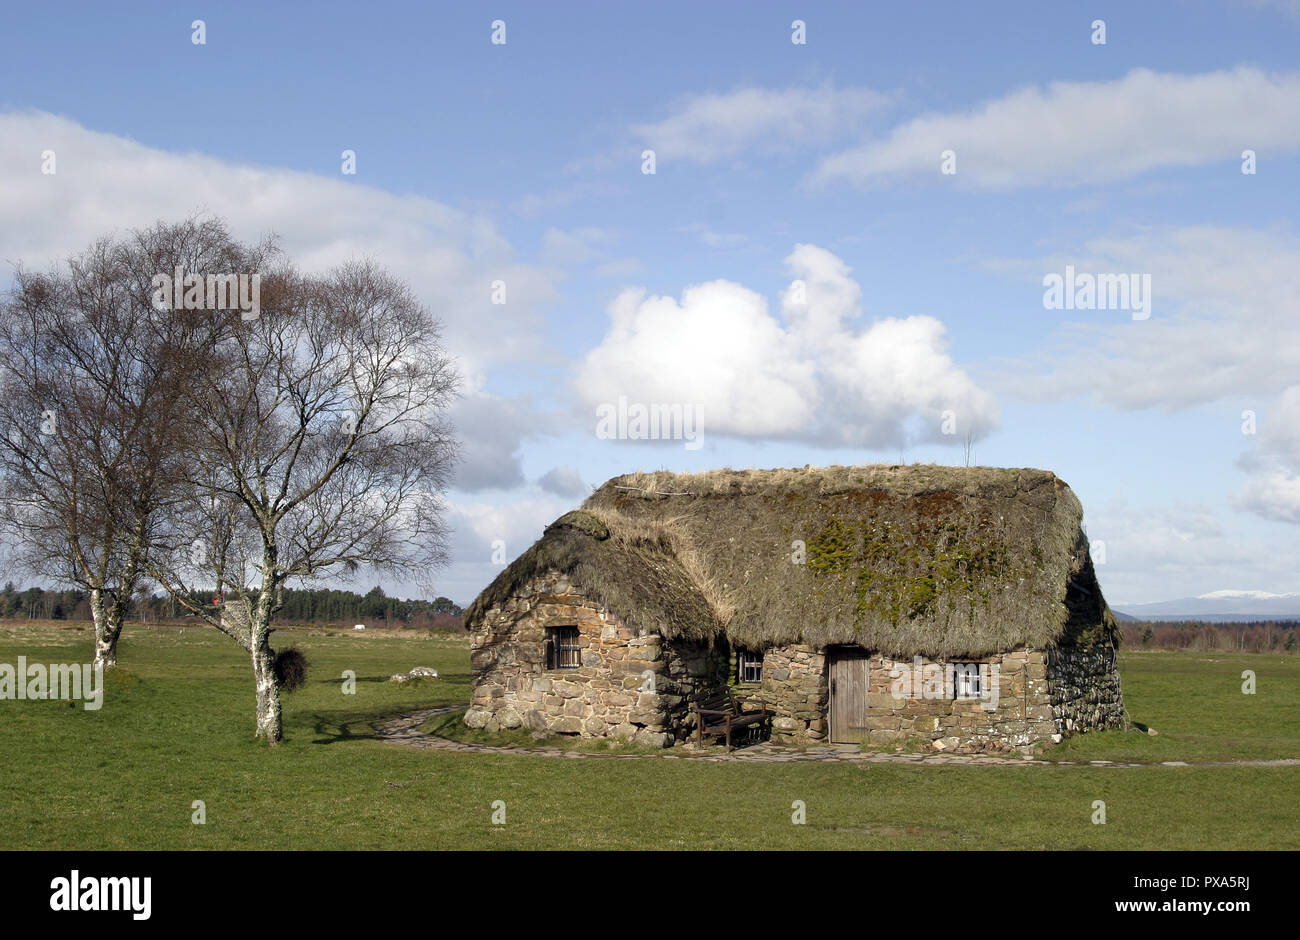 Ein altes Reetdach Bauernhaus ist alles, was von der alten Leanach Siedlung, die in der Nähe des Schlachtfeldes, wo die Schlacht von Culloden stattfand und wo Bonnie Prince Charlie war im Jahre 1746 besiegt wurde. Stockfoto